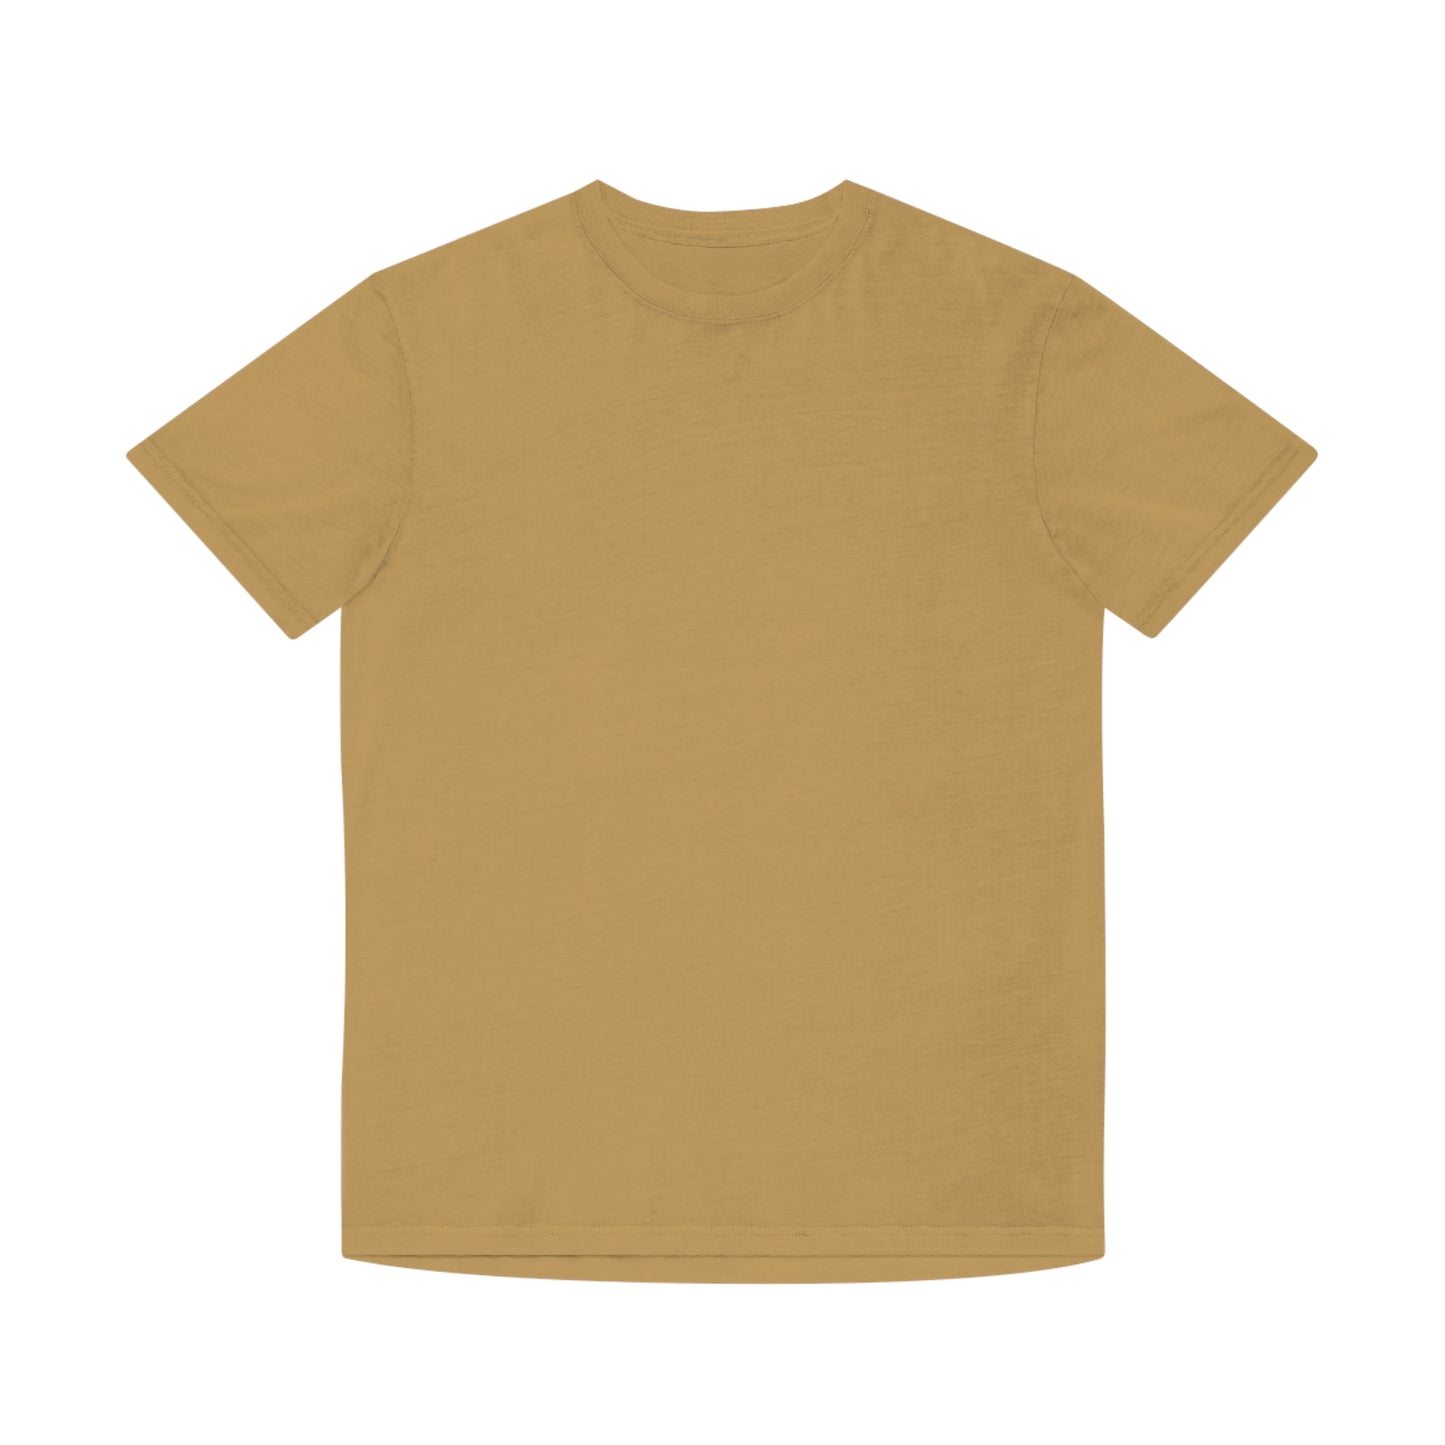 Faded Mustard Tshirt Australian Printer